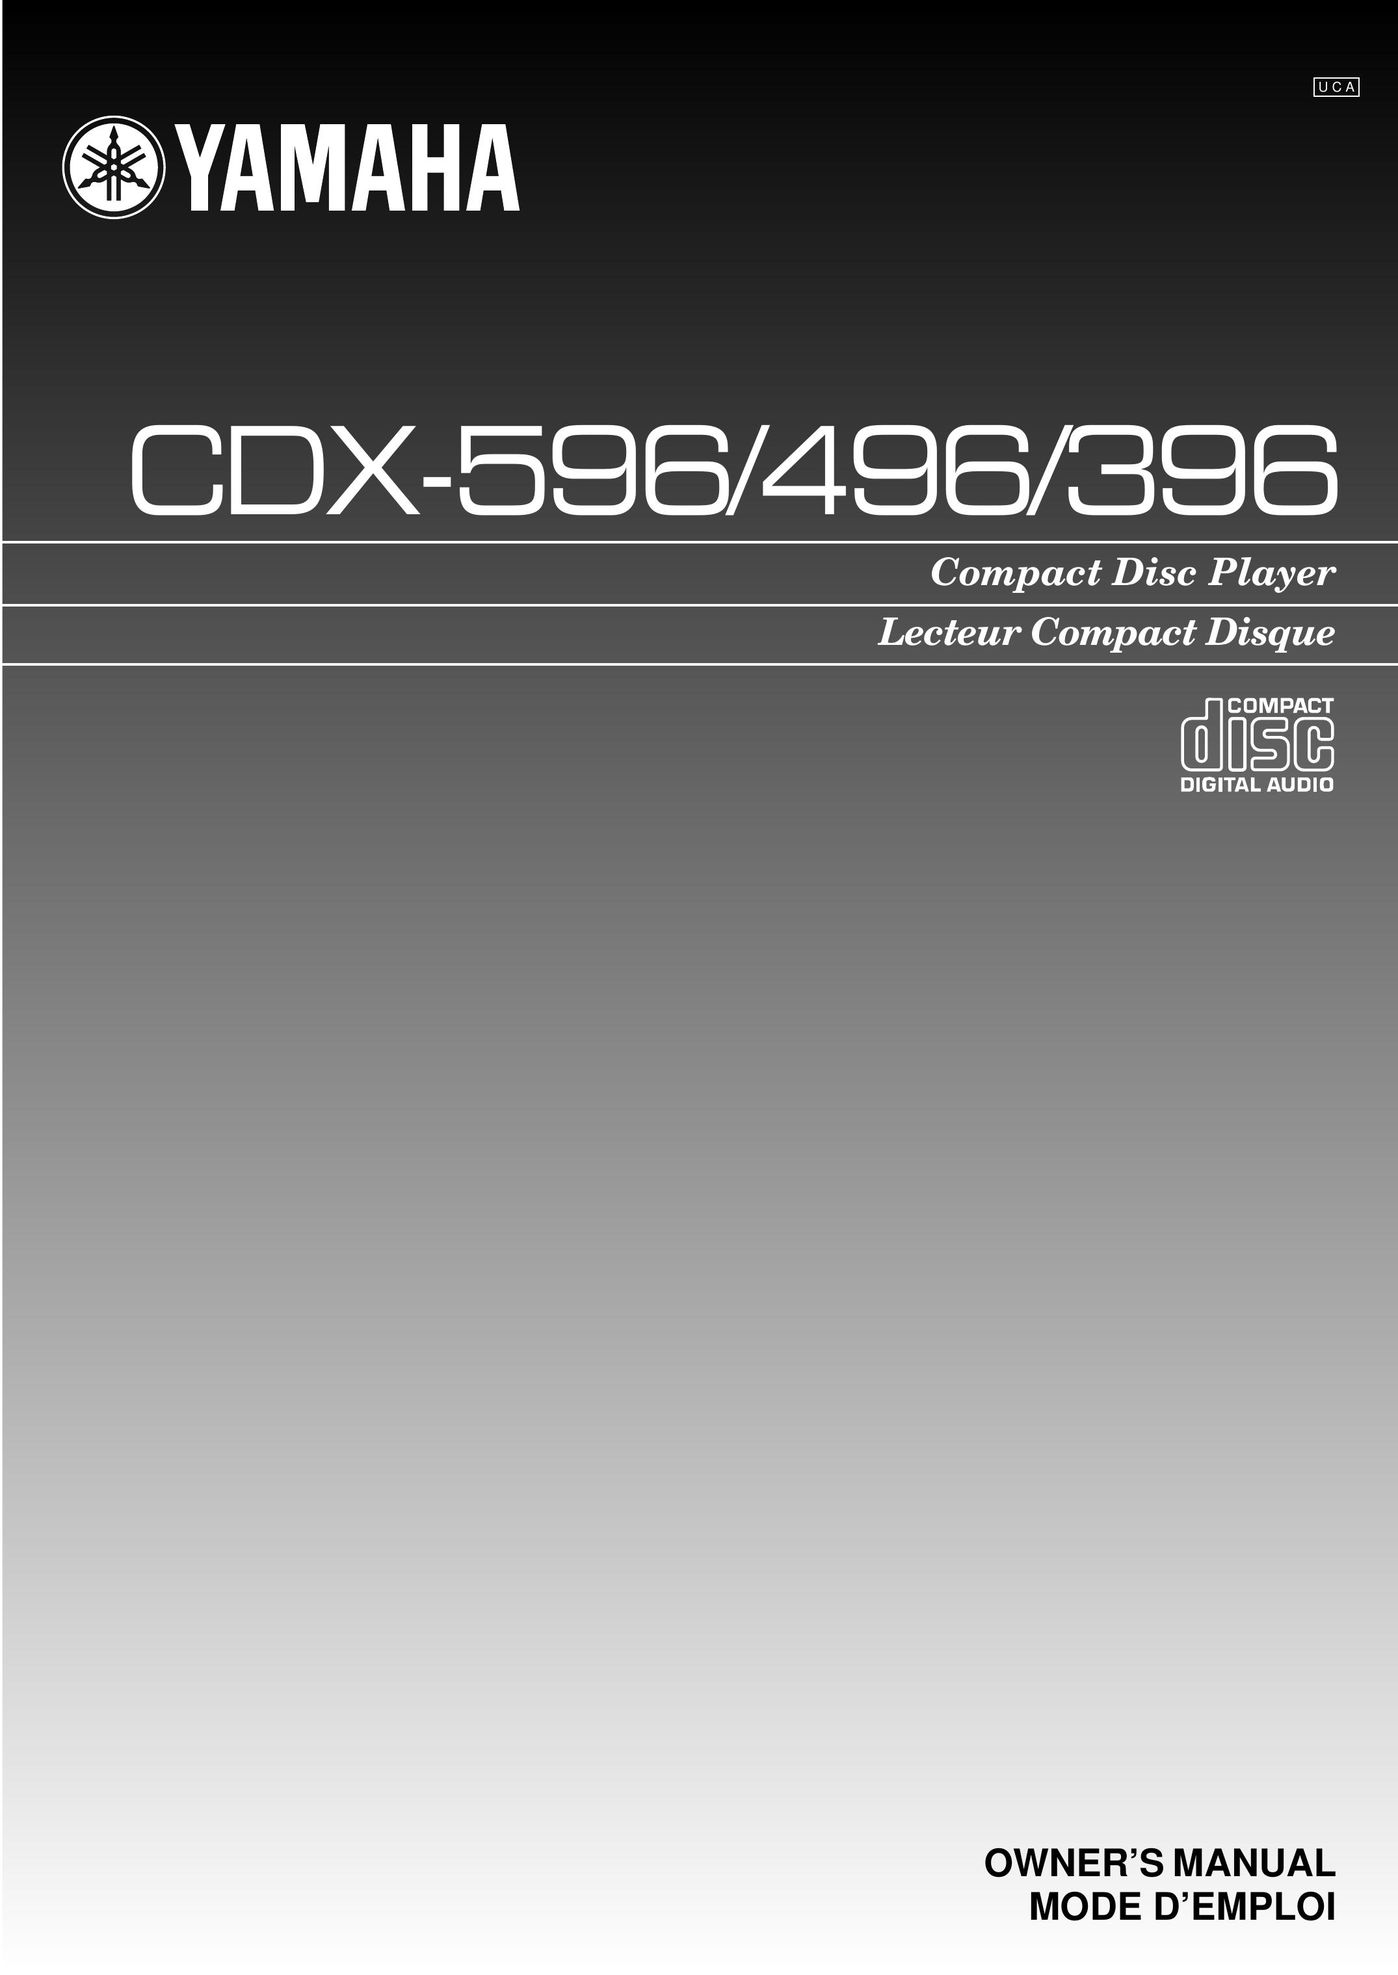 Yamaha CDX-396 CD Player User Manual